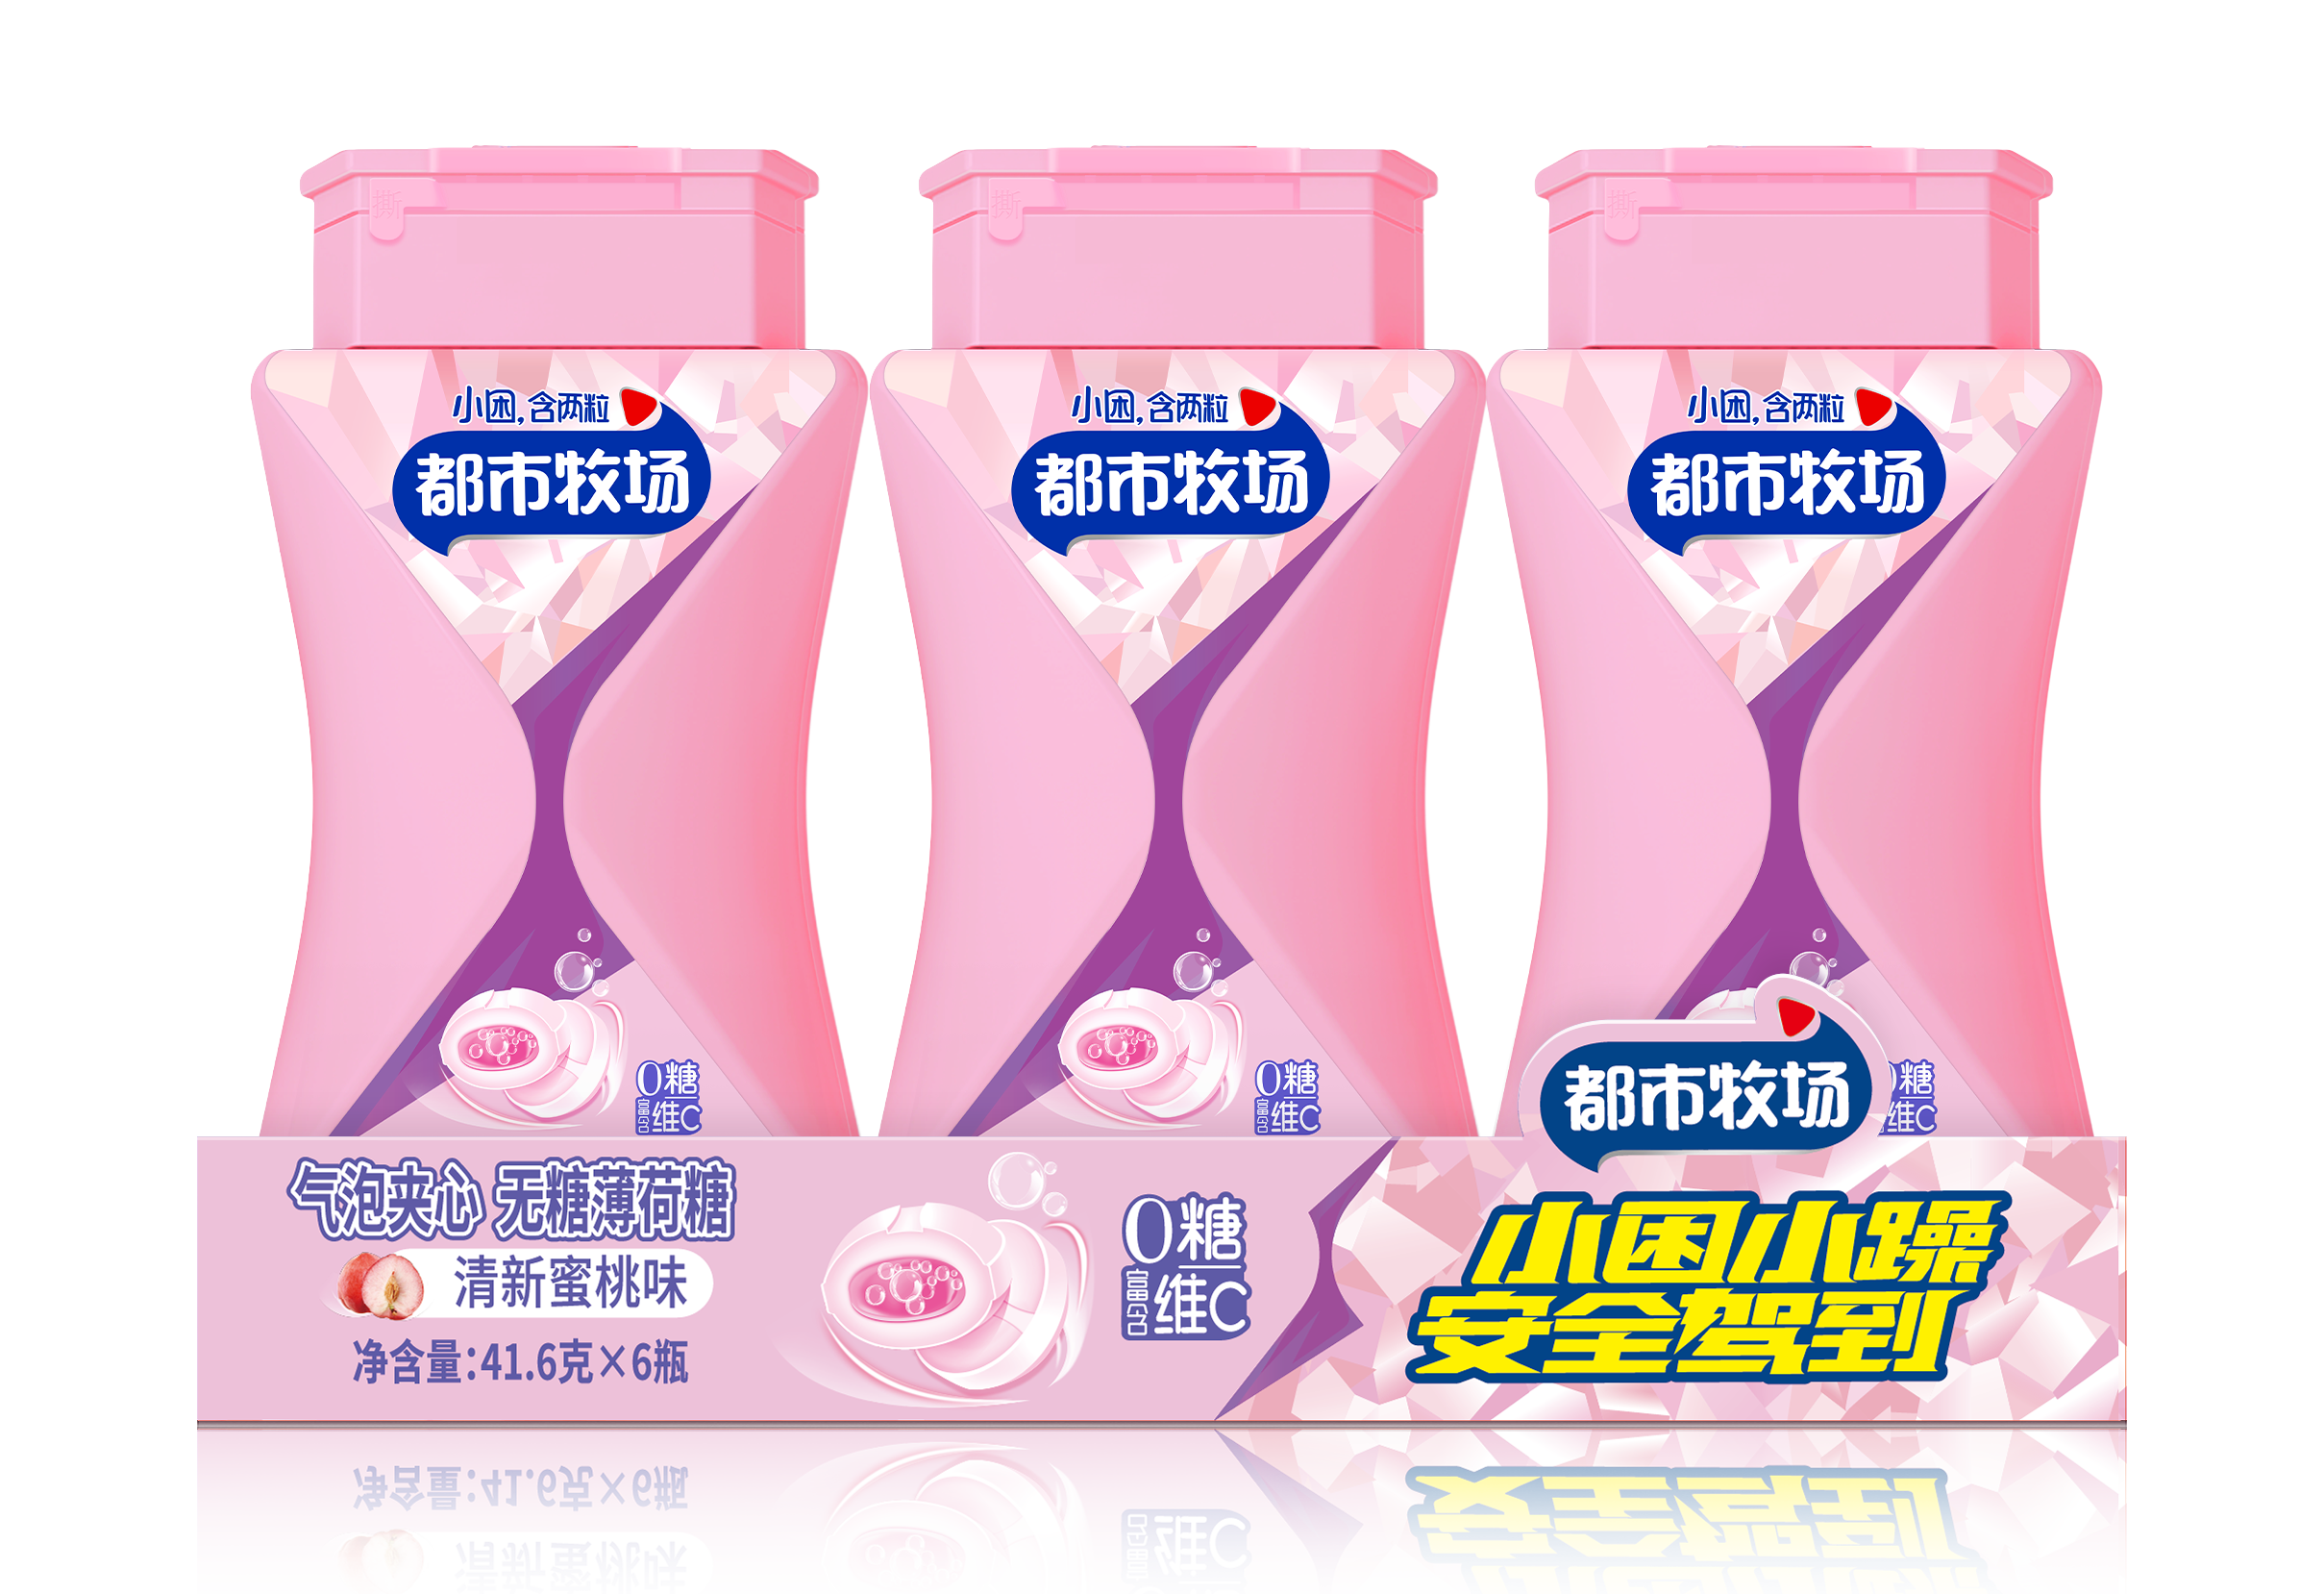 Značky mátových bonbónů v Číně Zakázkové cukrovinky bez cukru Máty šumivé bonbóny Zdravější dodavatel bonbónů